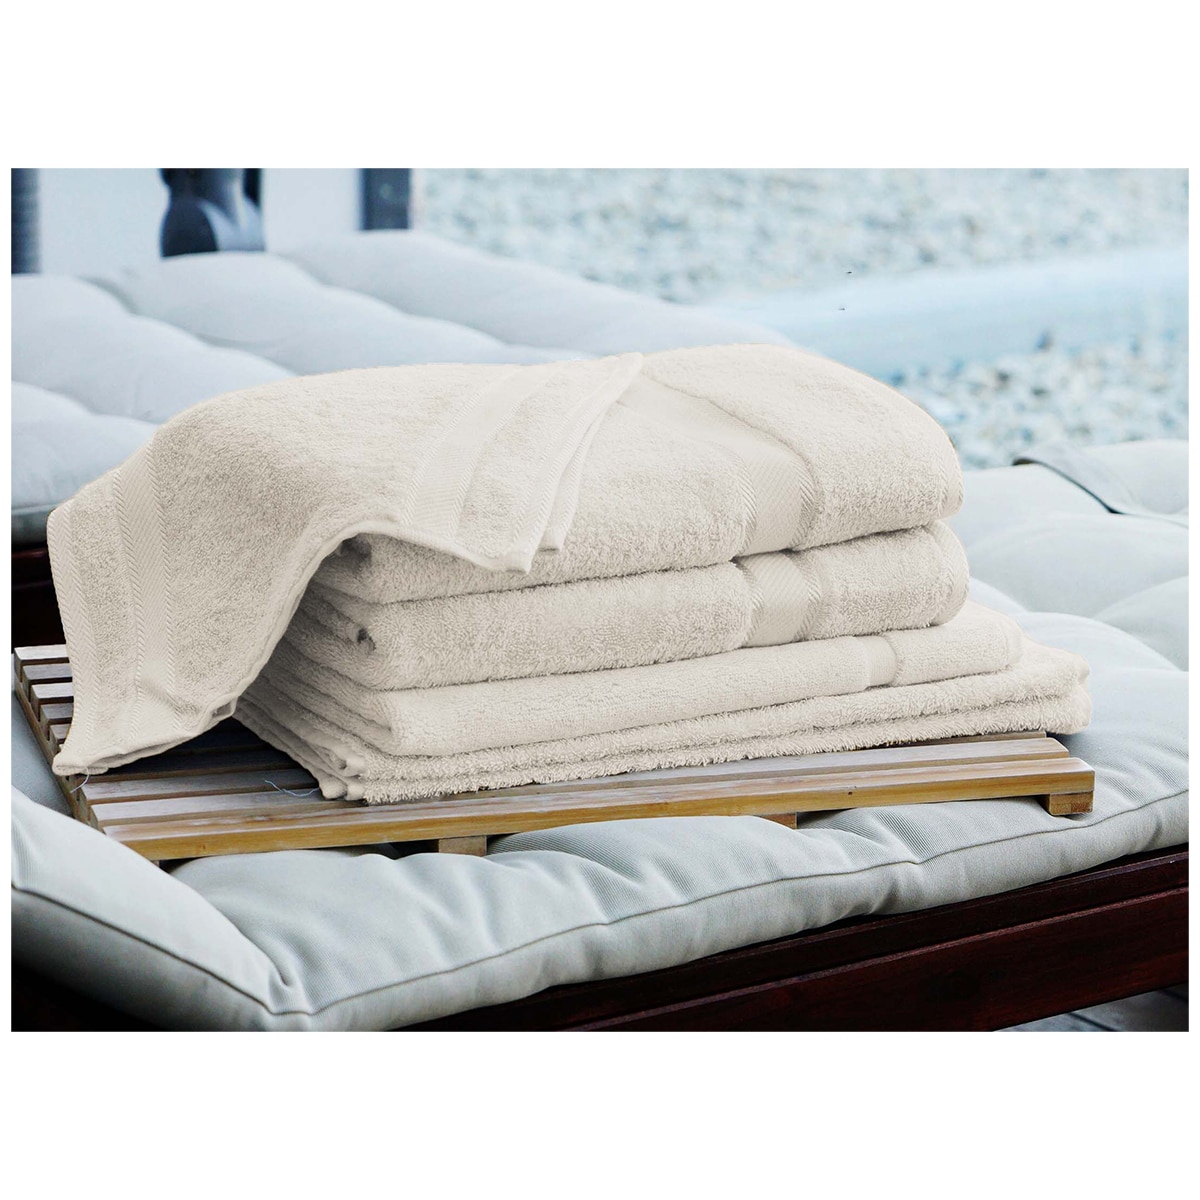 Kingtex Plain dyed 100% Combed Cotton towel range 550gsm Bath Sheet set 7 piece - Linen